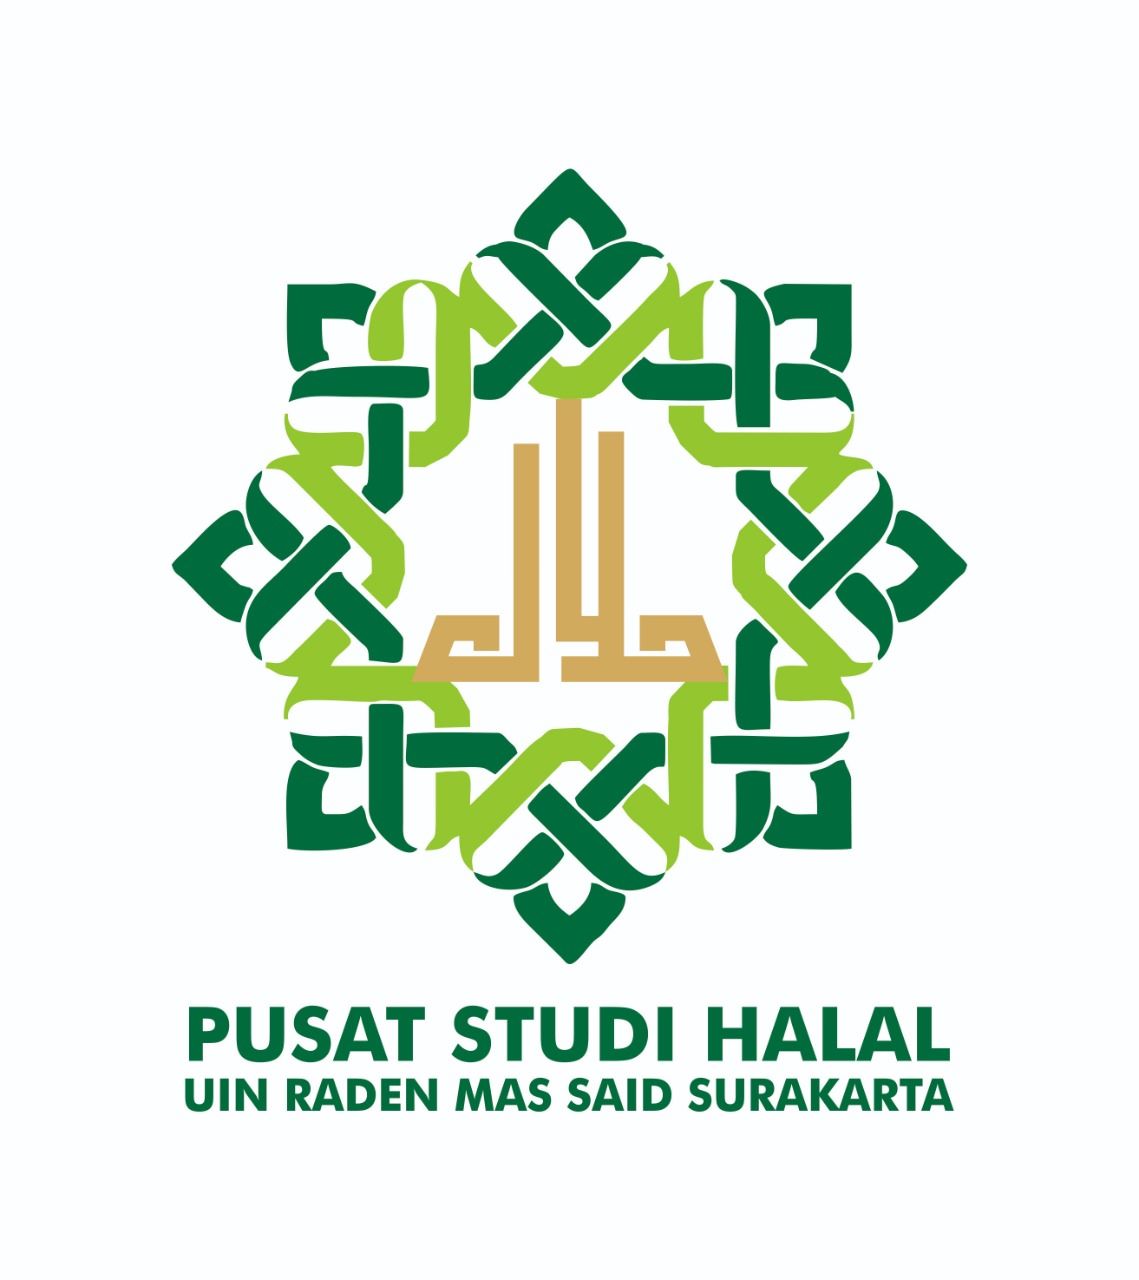 Pusat Studi Halal Siap Dampingi Kantin di UIN RM Said Dapatkan Sertifikat Halal